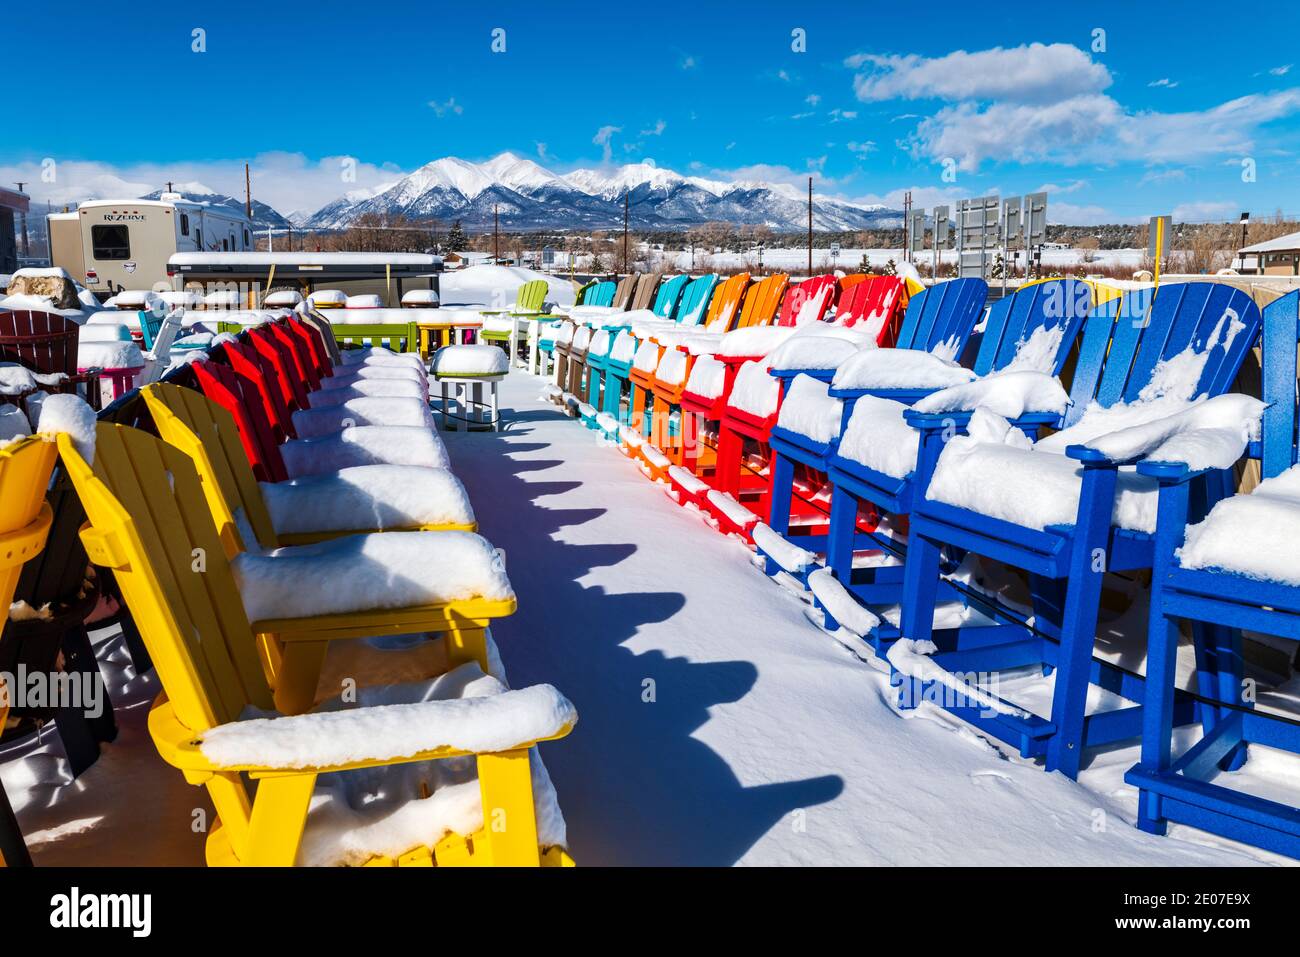 Sedie colorate in stile Adirondack nella neve fresca; negozio al dettaglio; Poncha Springs; Colorado; USA Foto Stock